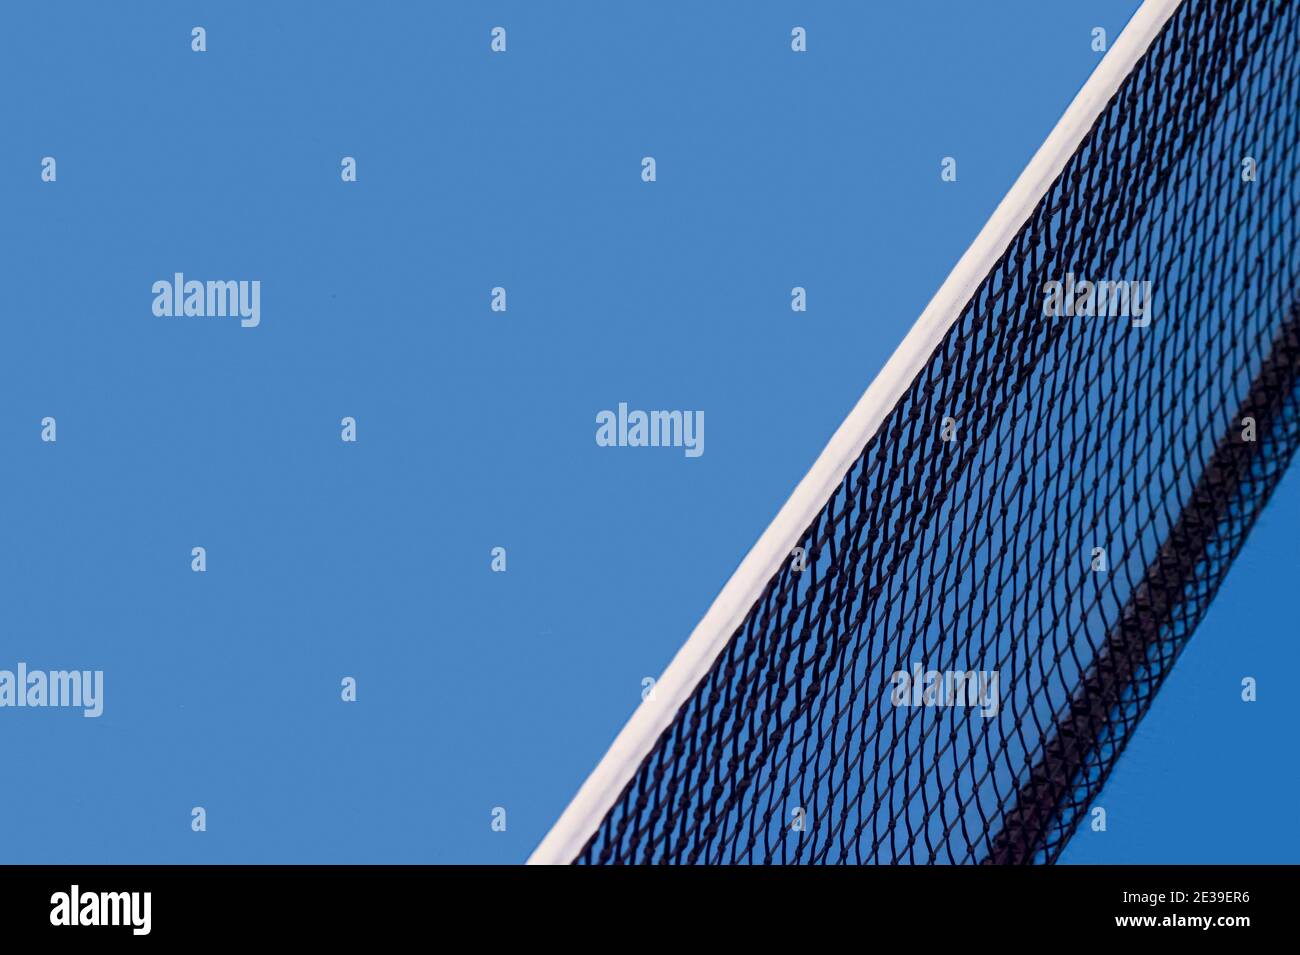 Filet de tennis à palette bleue et court de tennis dur. Concept de compétition de tennis Banque D'Images